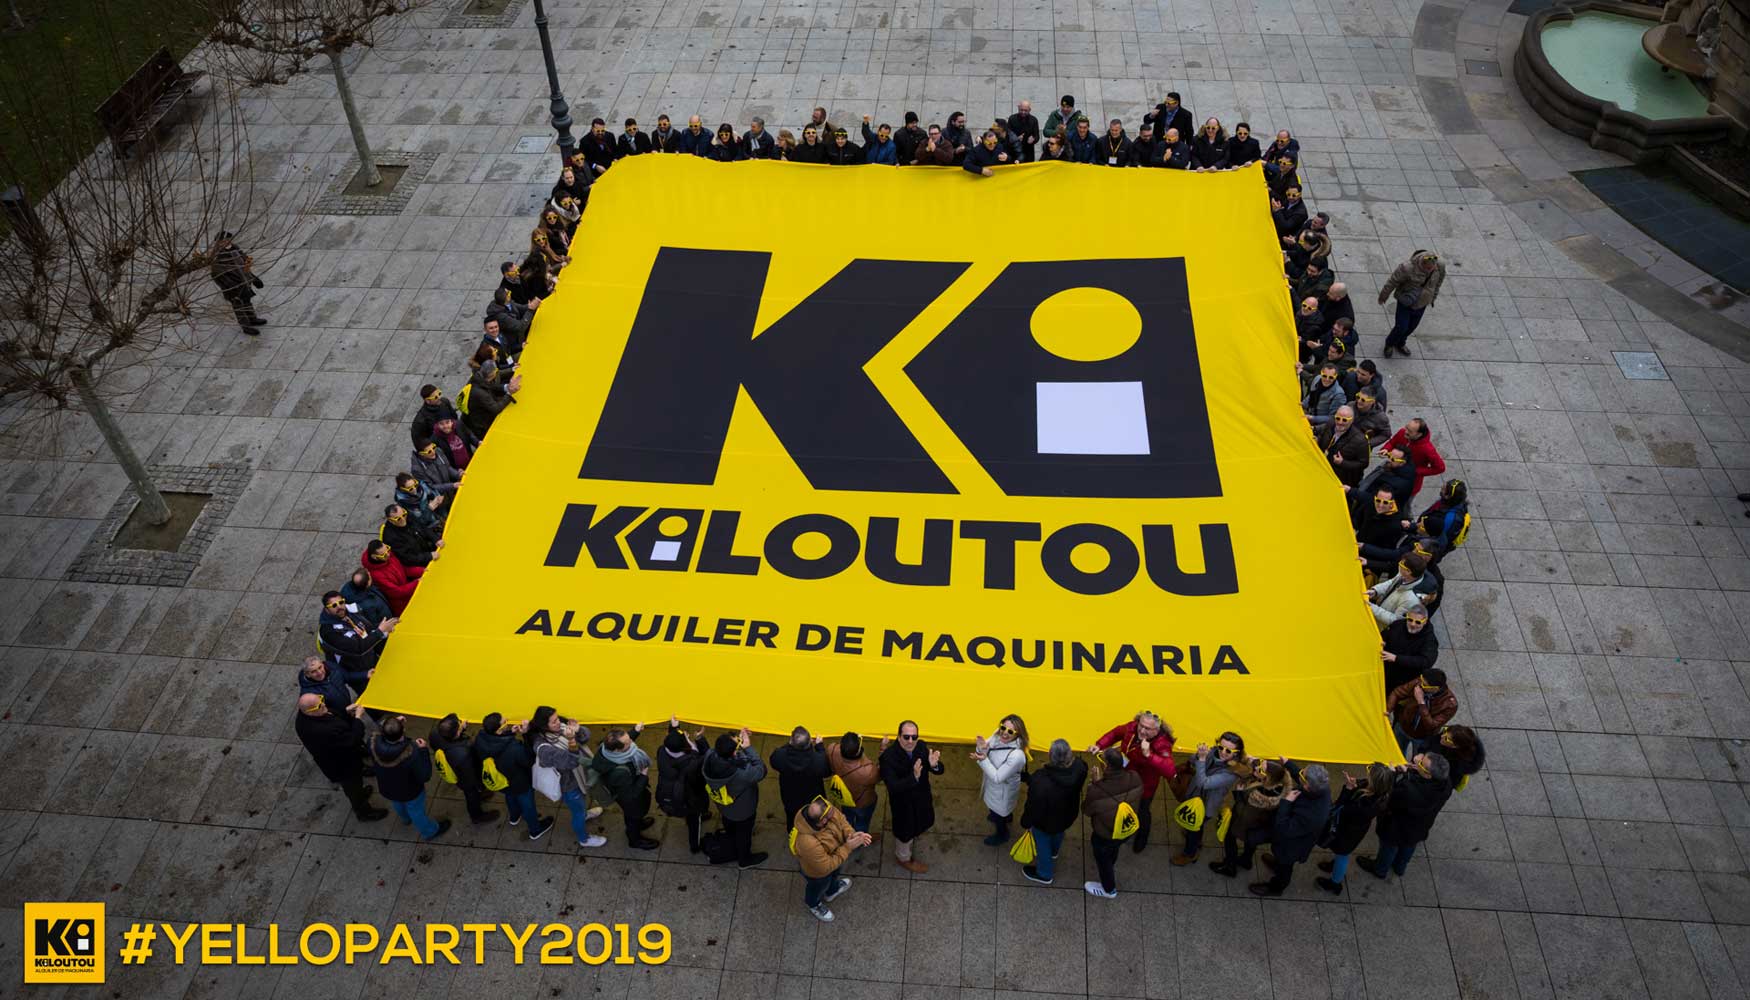 Despliegue en la Plaza del Castillo de Pamplona de una lona de ms de 30 metros con el logo del Grupo Kiloutou Espaa